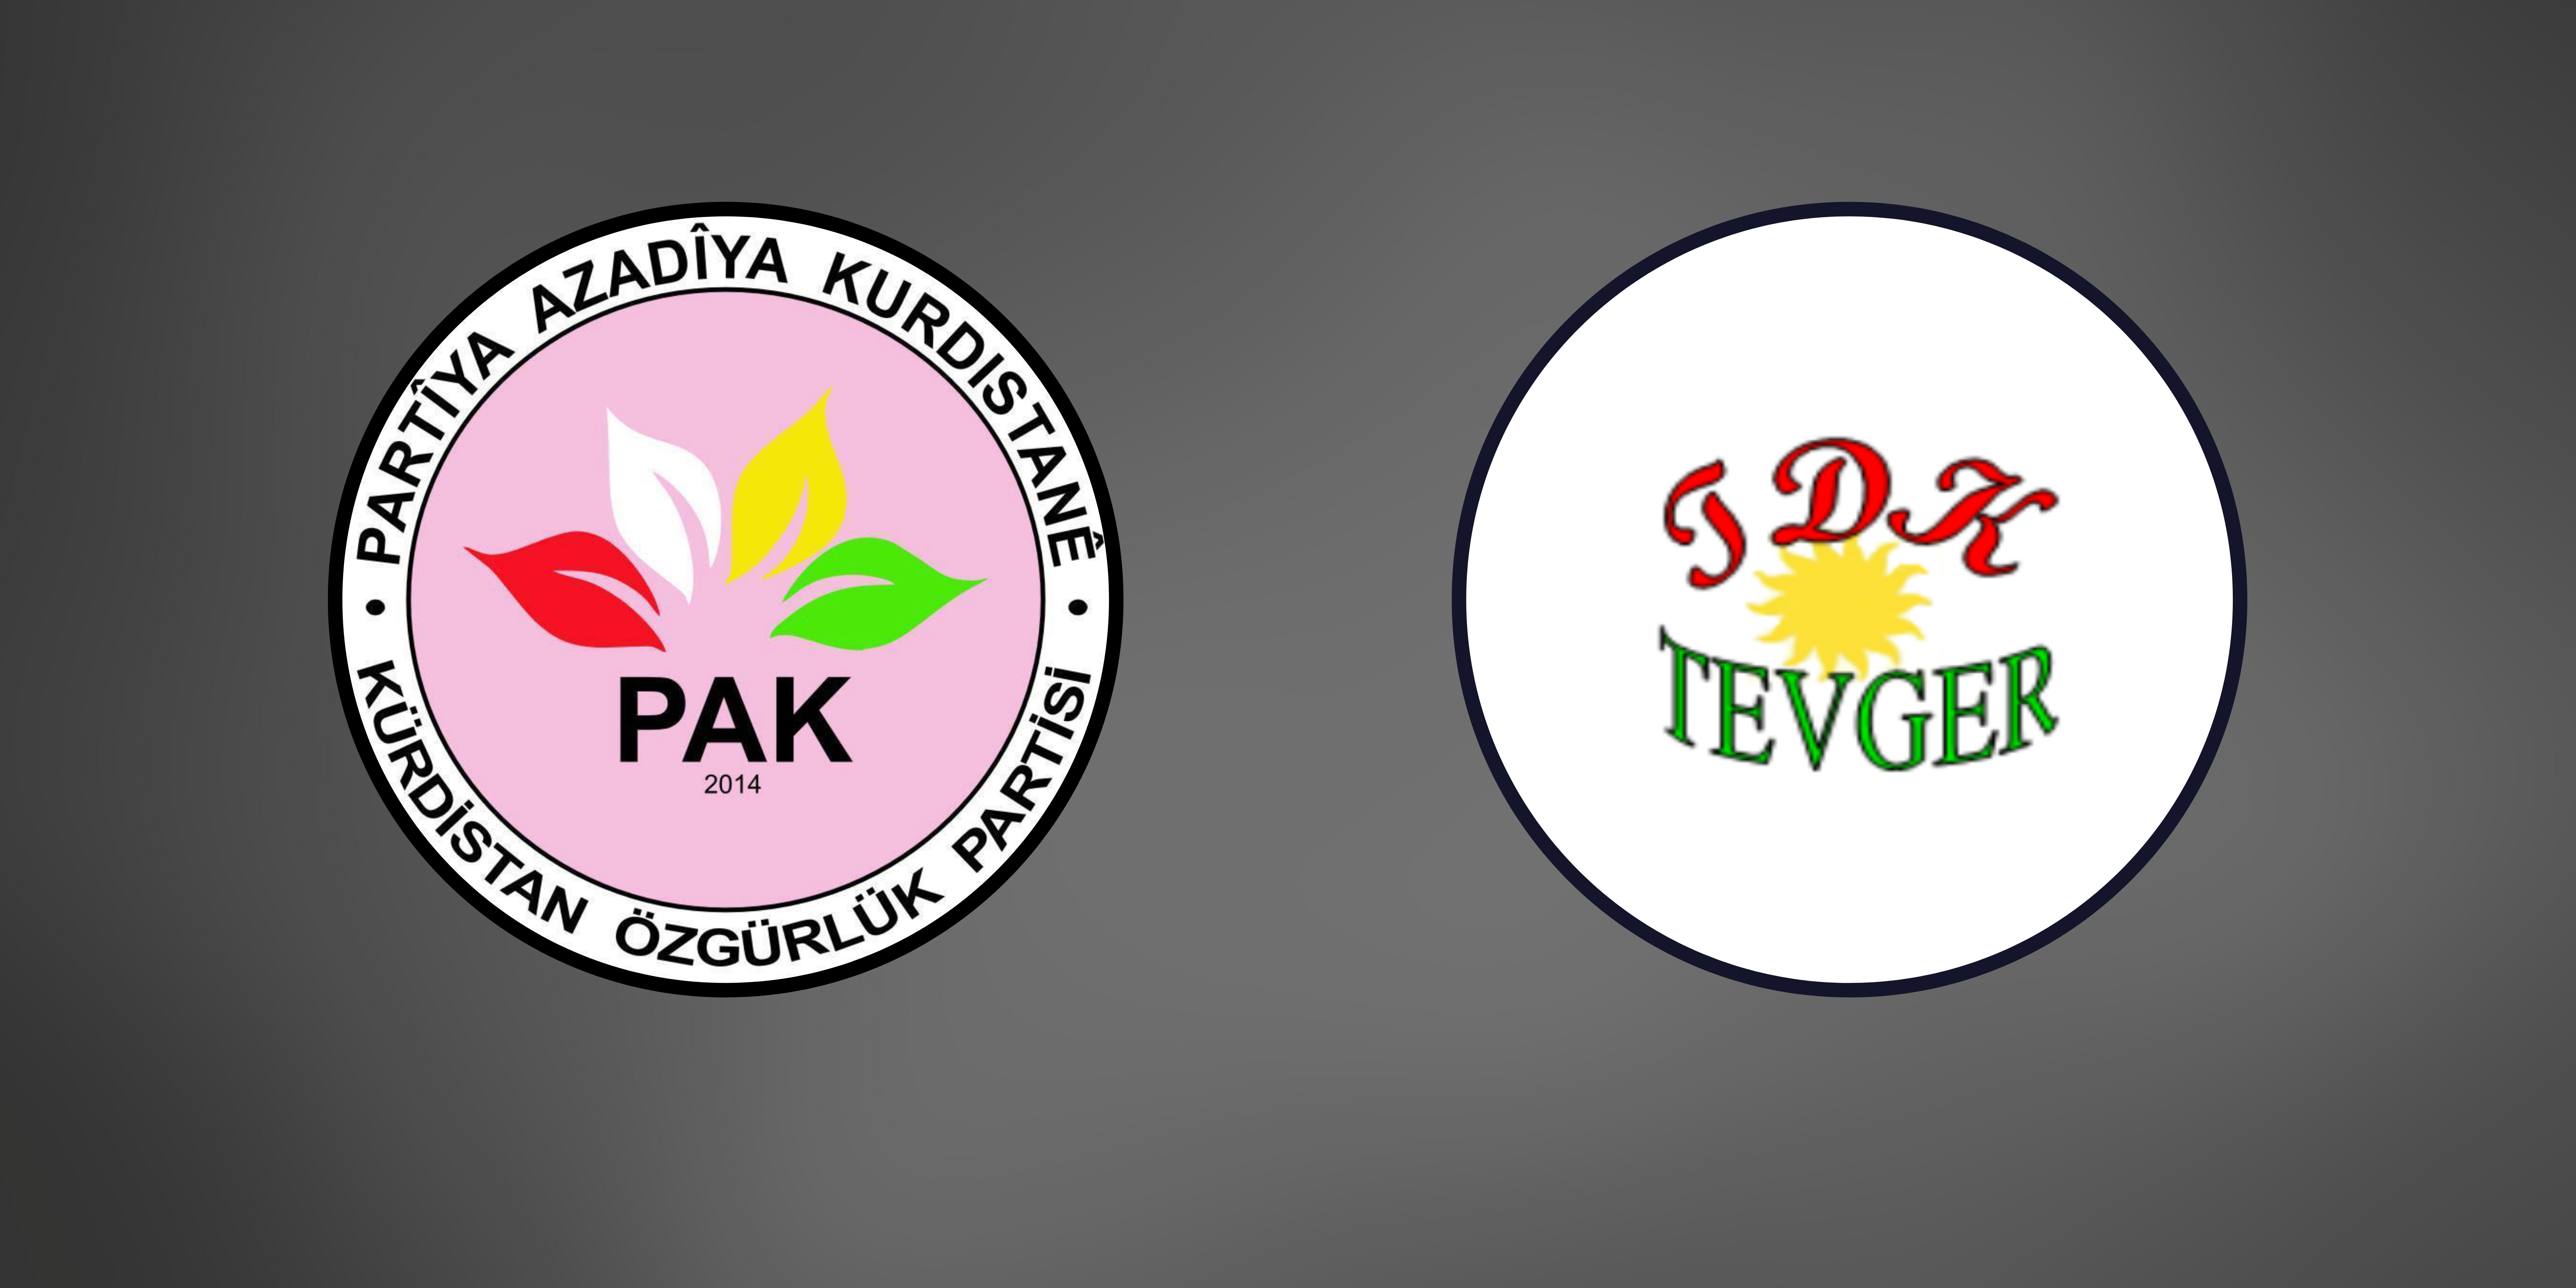 TDK-TEVGER, PAK:  E-Reçetem'e Kürtçe de eklenmeli, Türkçe ile beraber Kürtçe de resmi dil olarak kabul edilmelidir